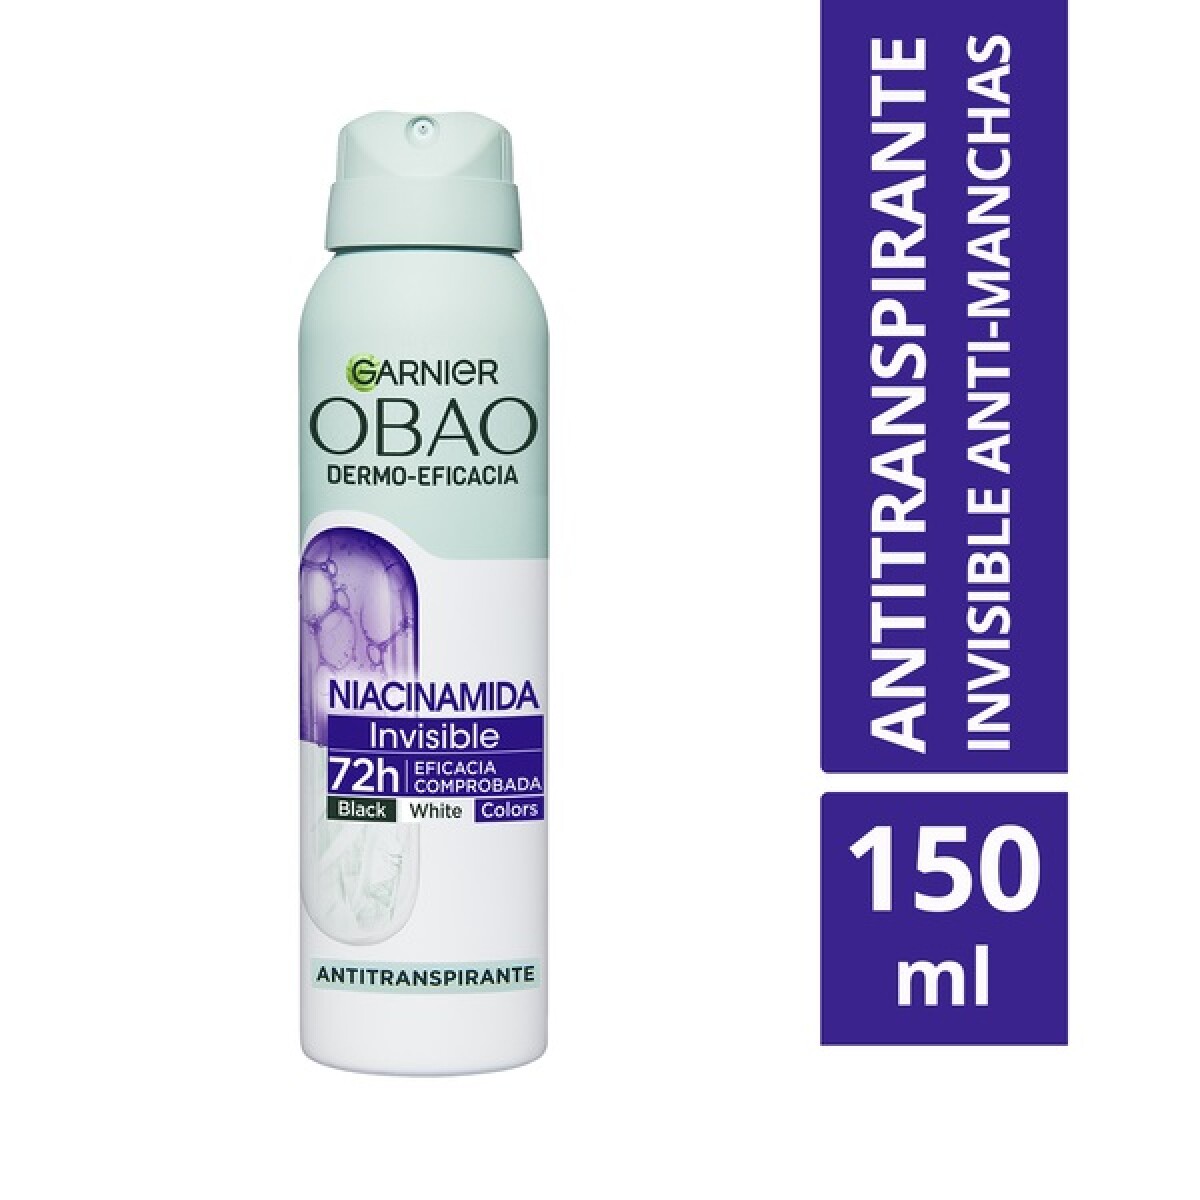 Desodorante Aerosol Obao Dermo-eficacia Niacinamida 150 Ml. 